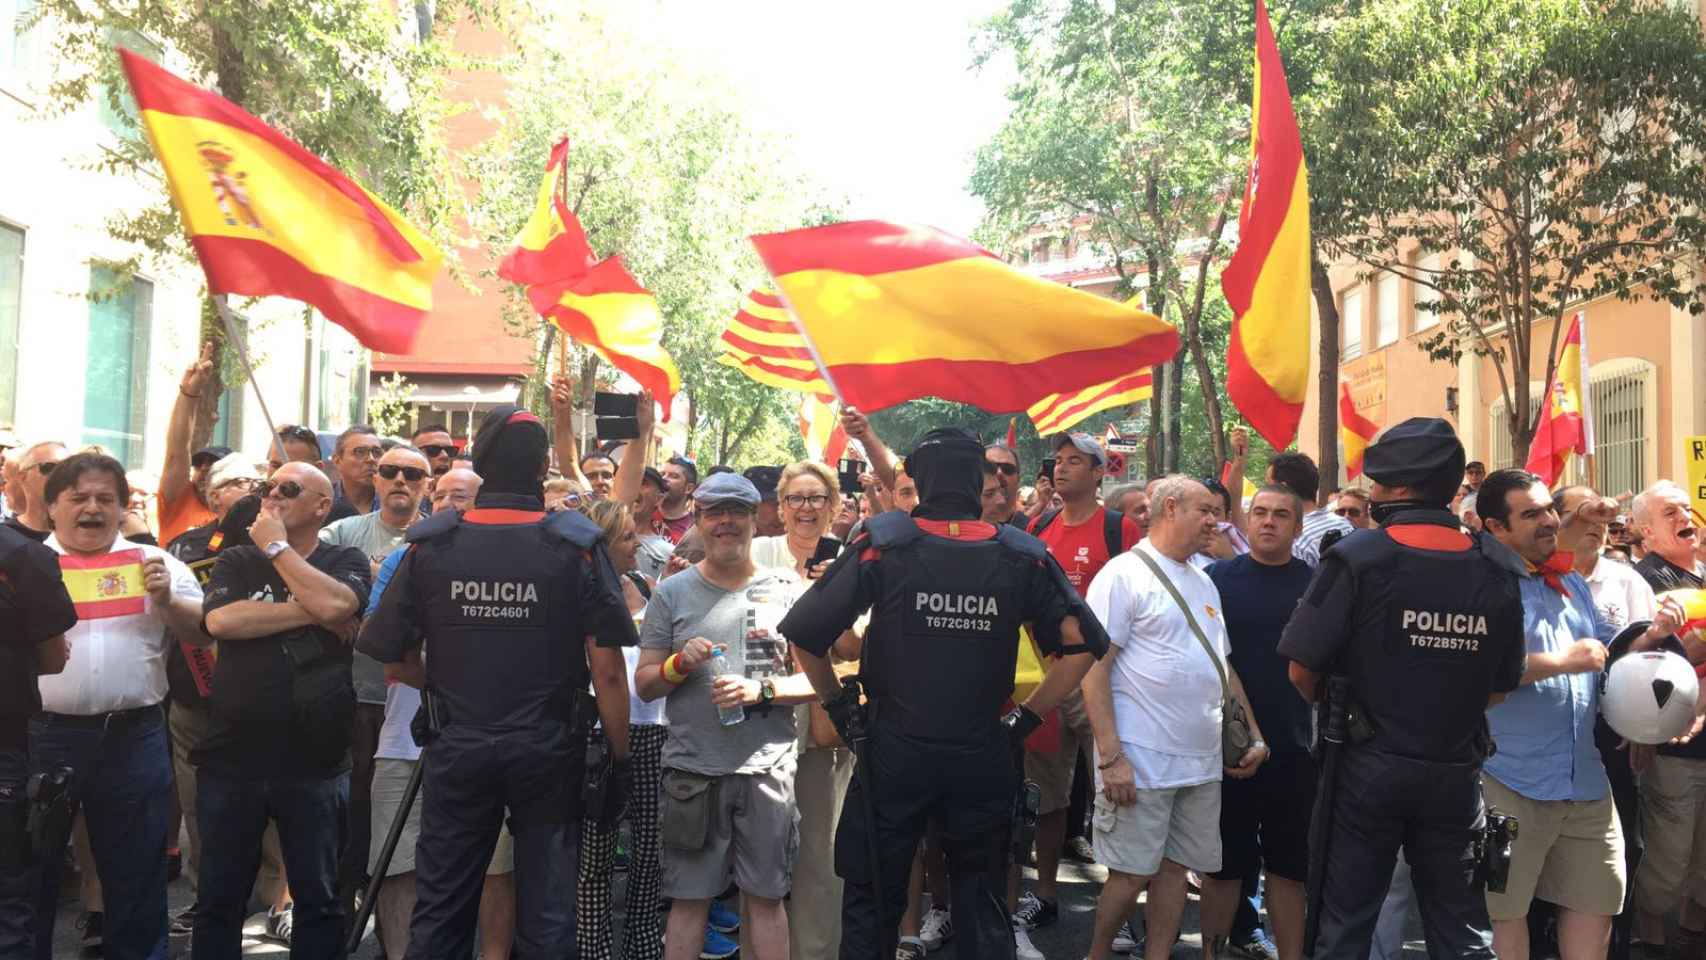 Dos manifestaciones, a favor y en contra de la Guardia Civil, coincidieron recientemente en el cuartel de Travessera de Gràcia / MS